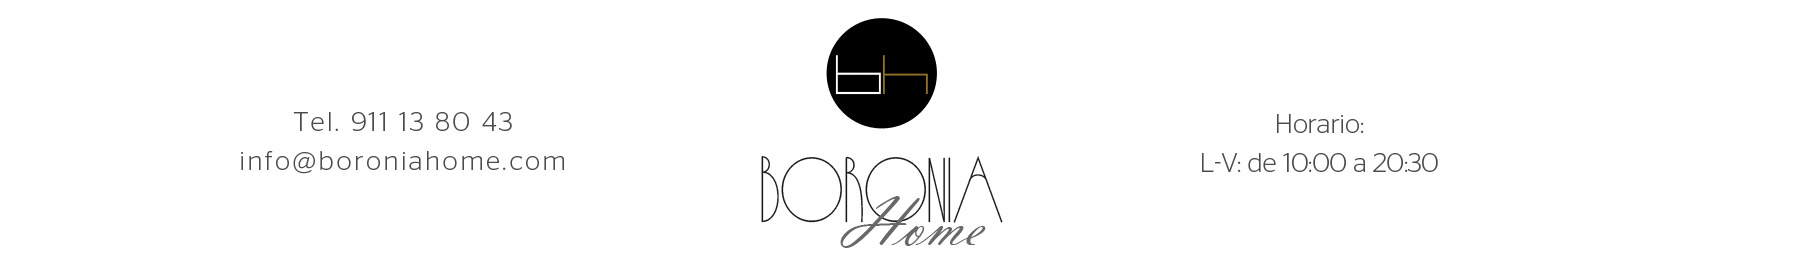 Boronia Home